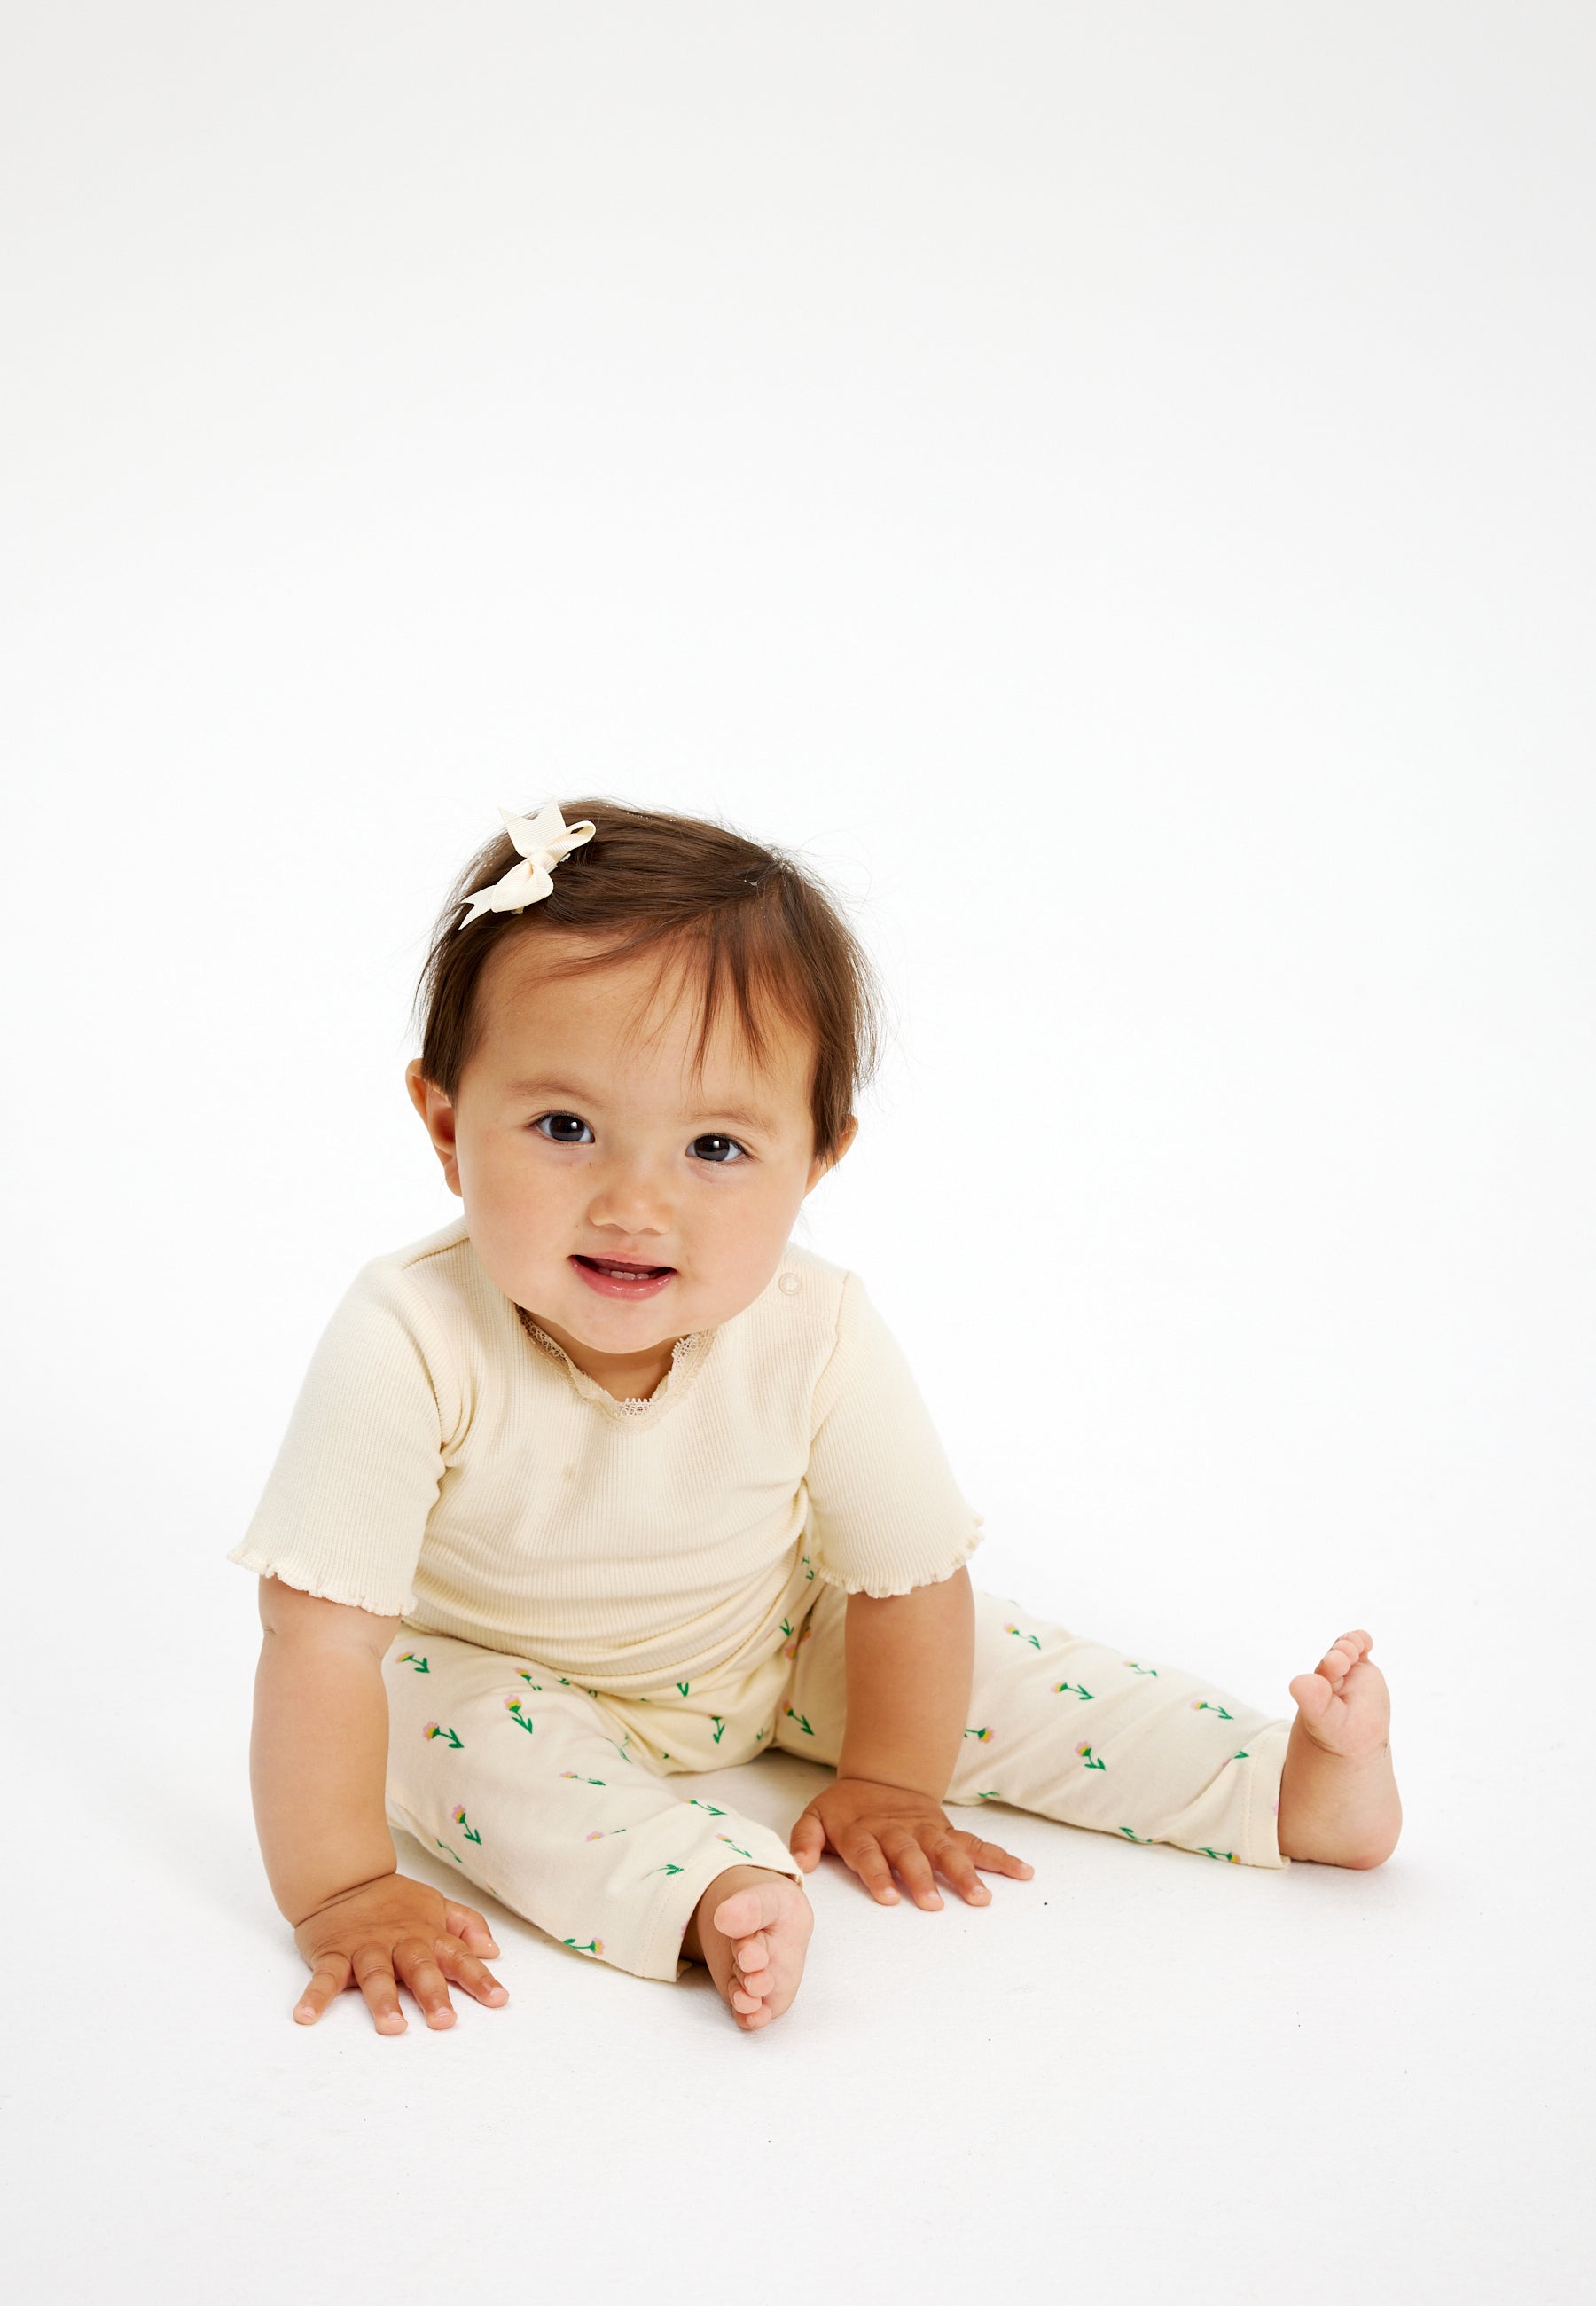 Shop tøj til baby pigen fra 0-4 år. Her hos THE NEW siblings finder du bl.a. nye styles fra Autumn23 kollektionen